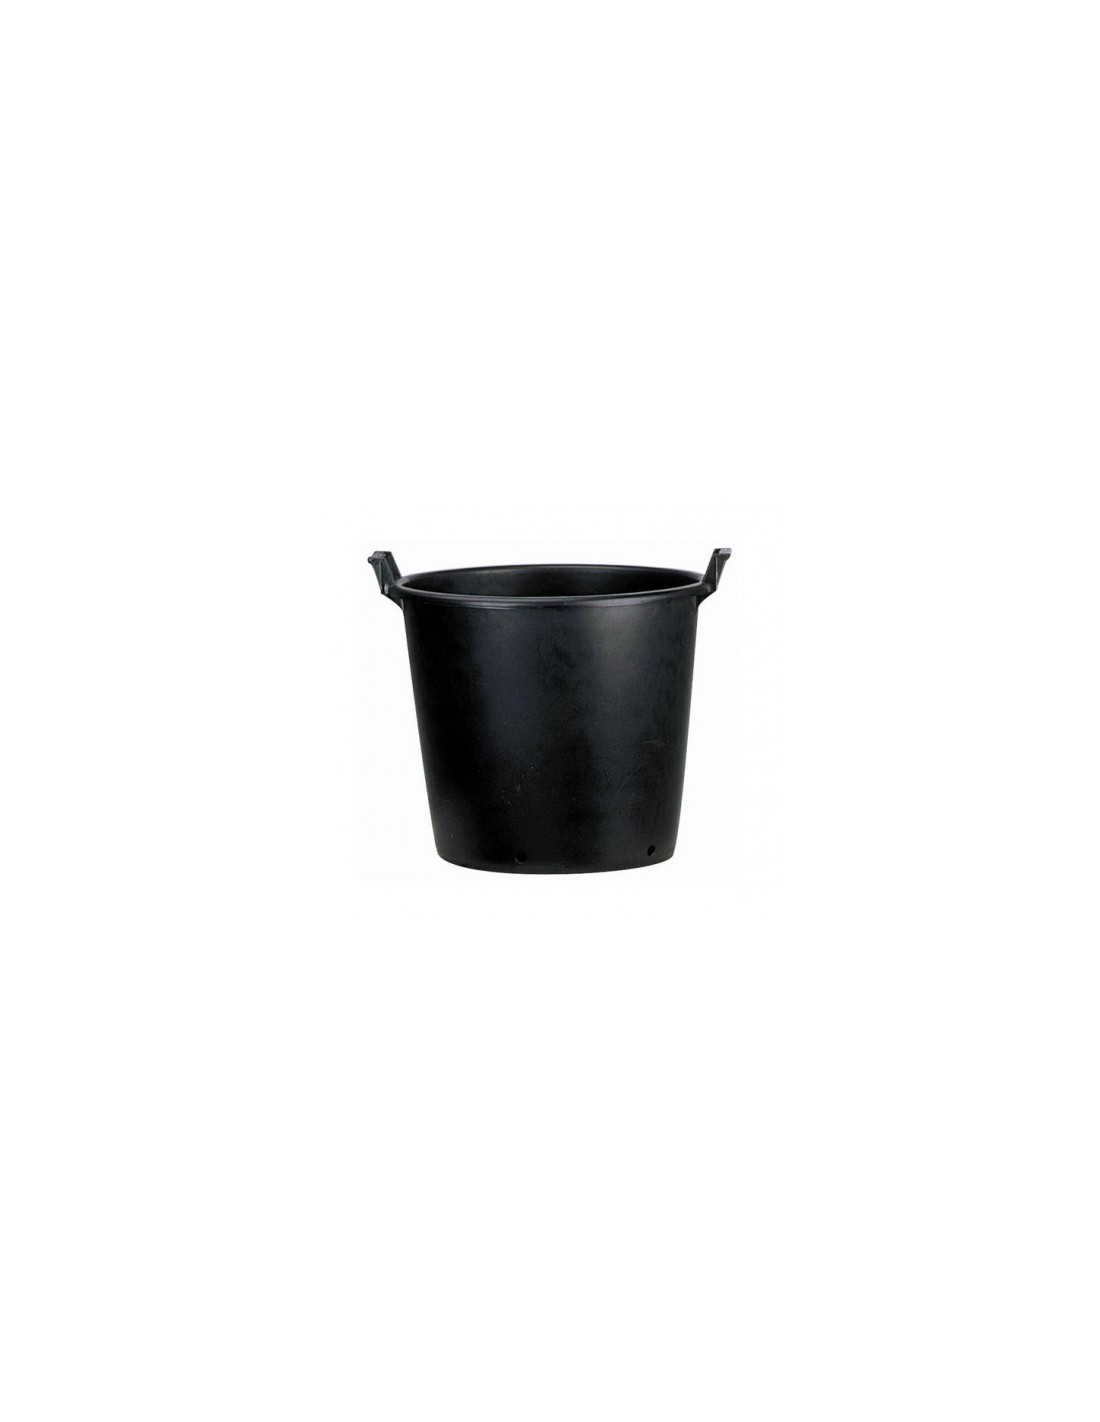 Pot rond plastique noir - Pots en plastique - Artiplantes